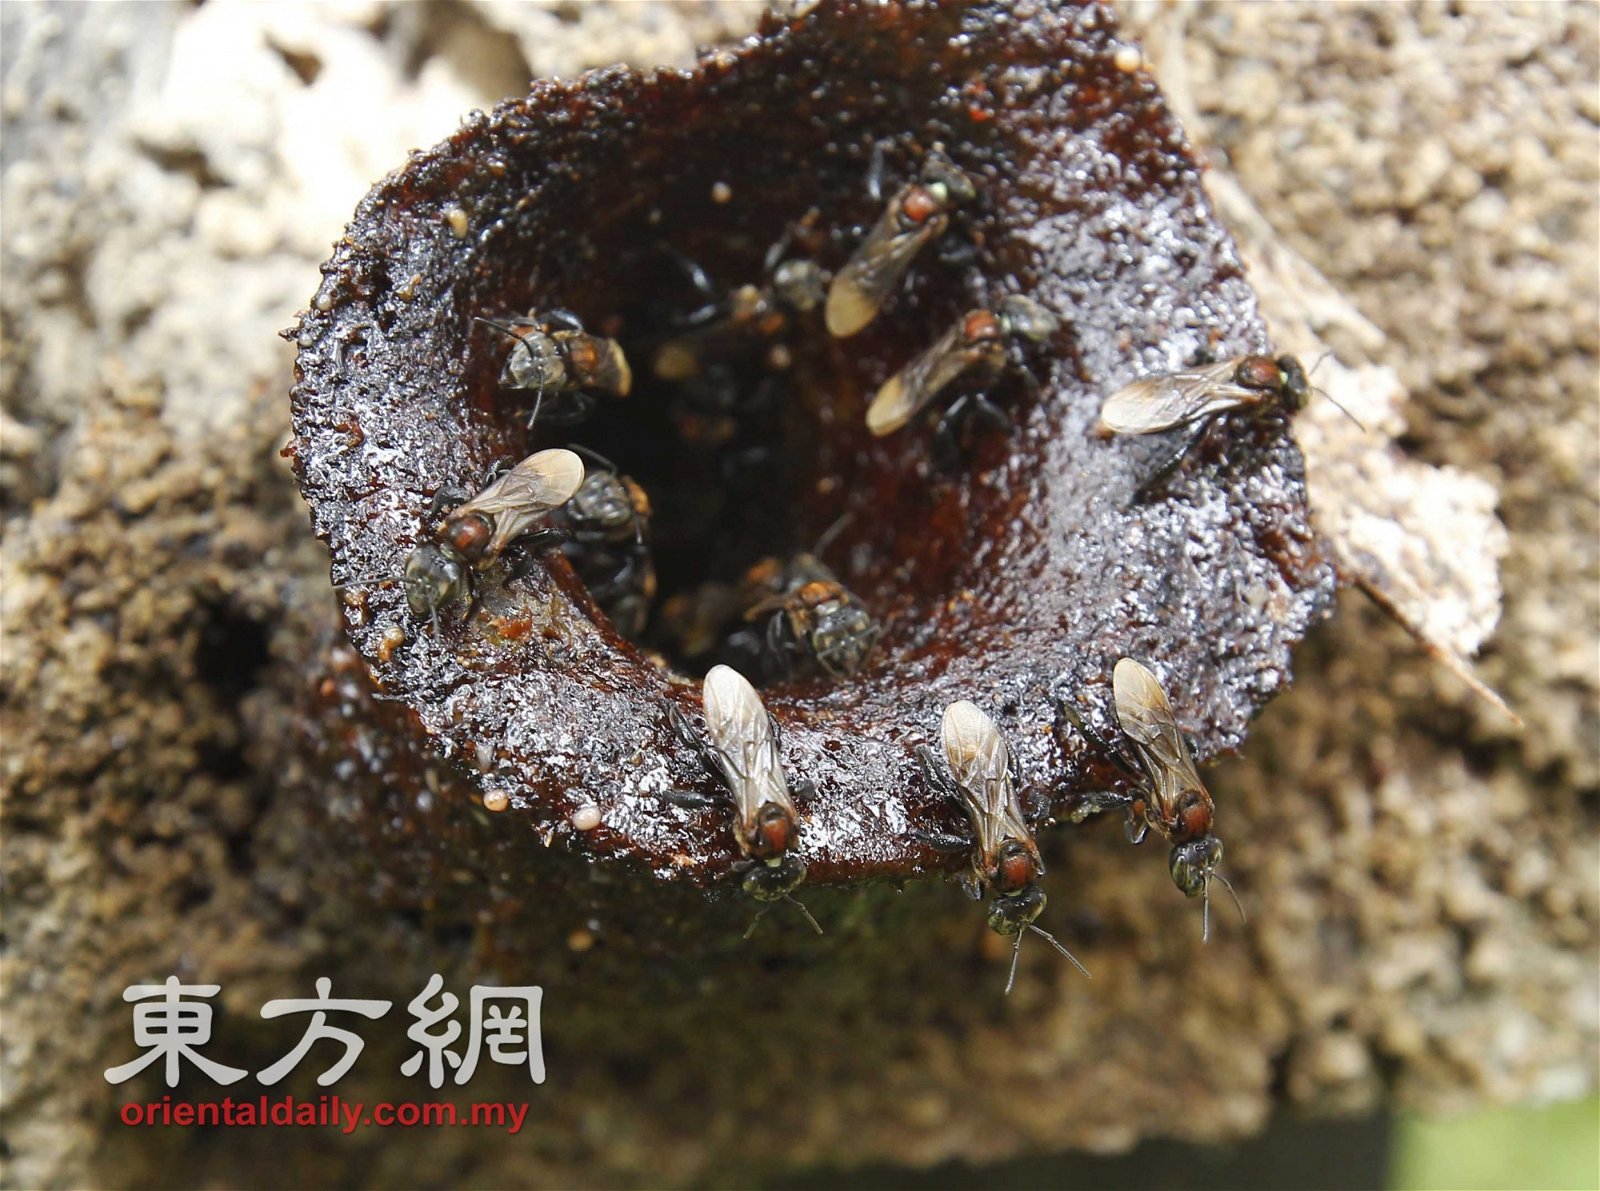 基于树桐的入口处与猪的嘴巴极为相似，因此这类蜂巢被称为“猪嘴”。